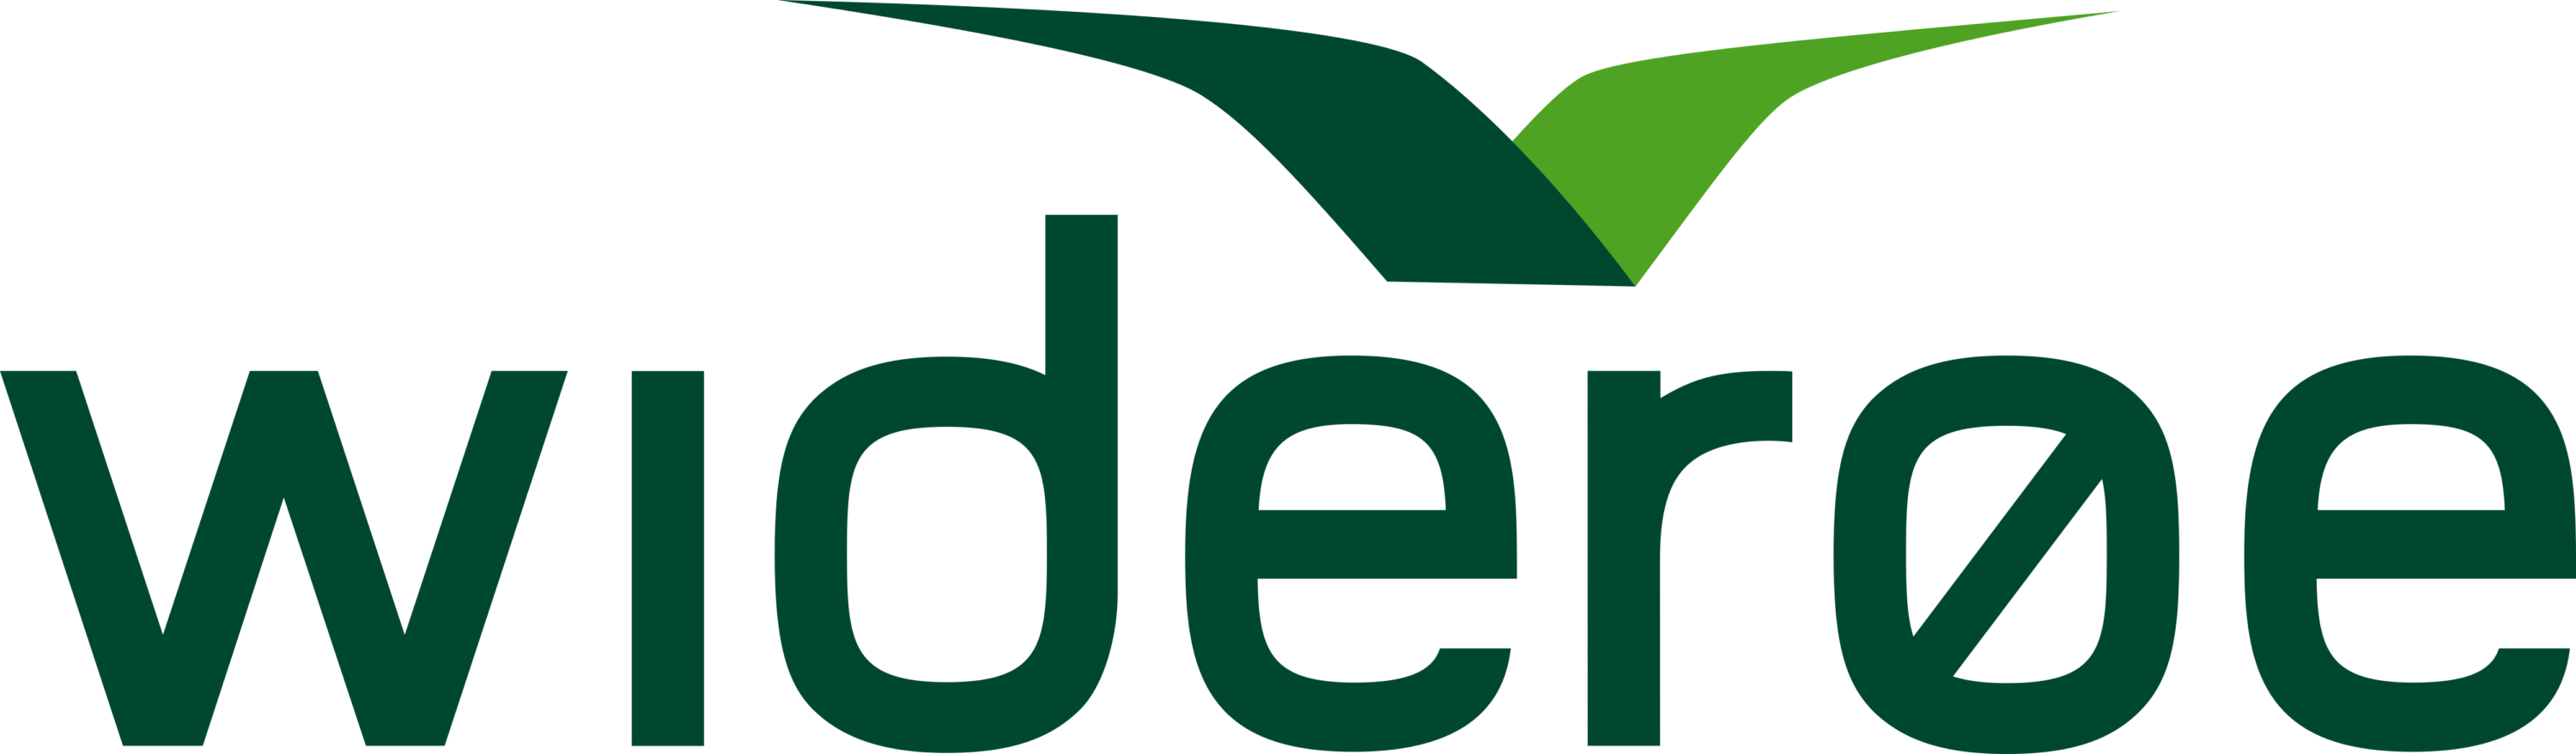 Widerøe Logo